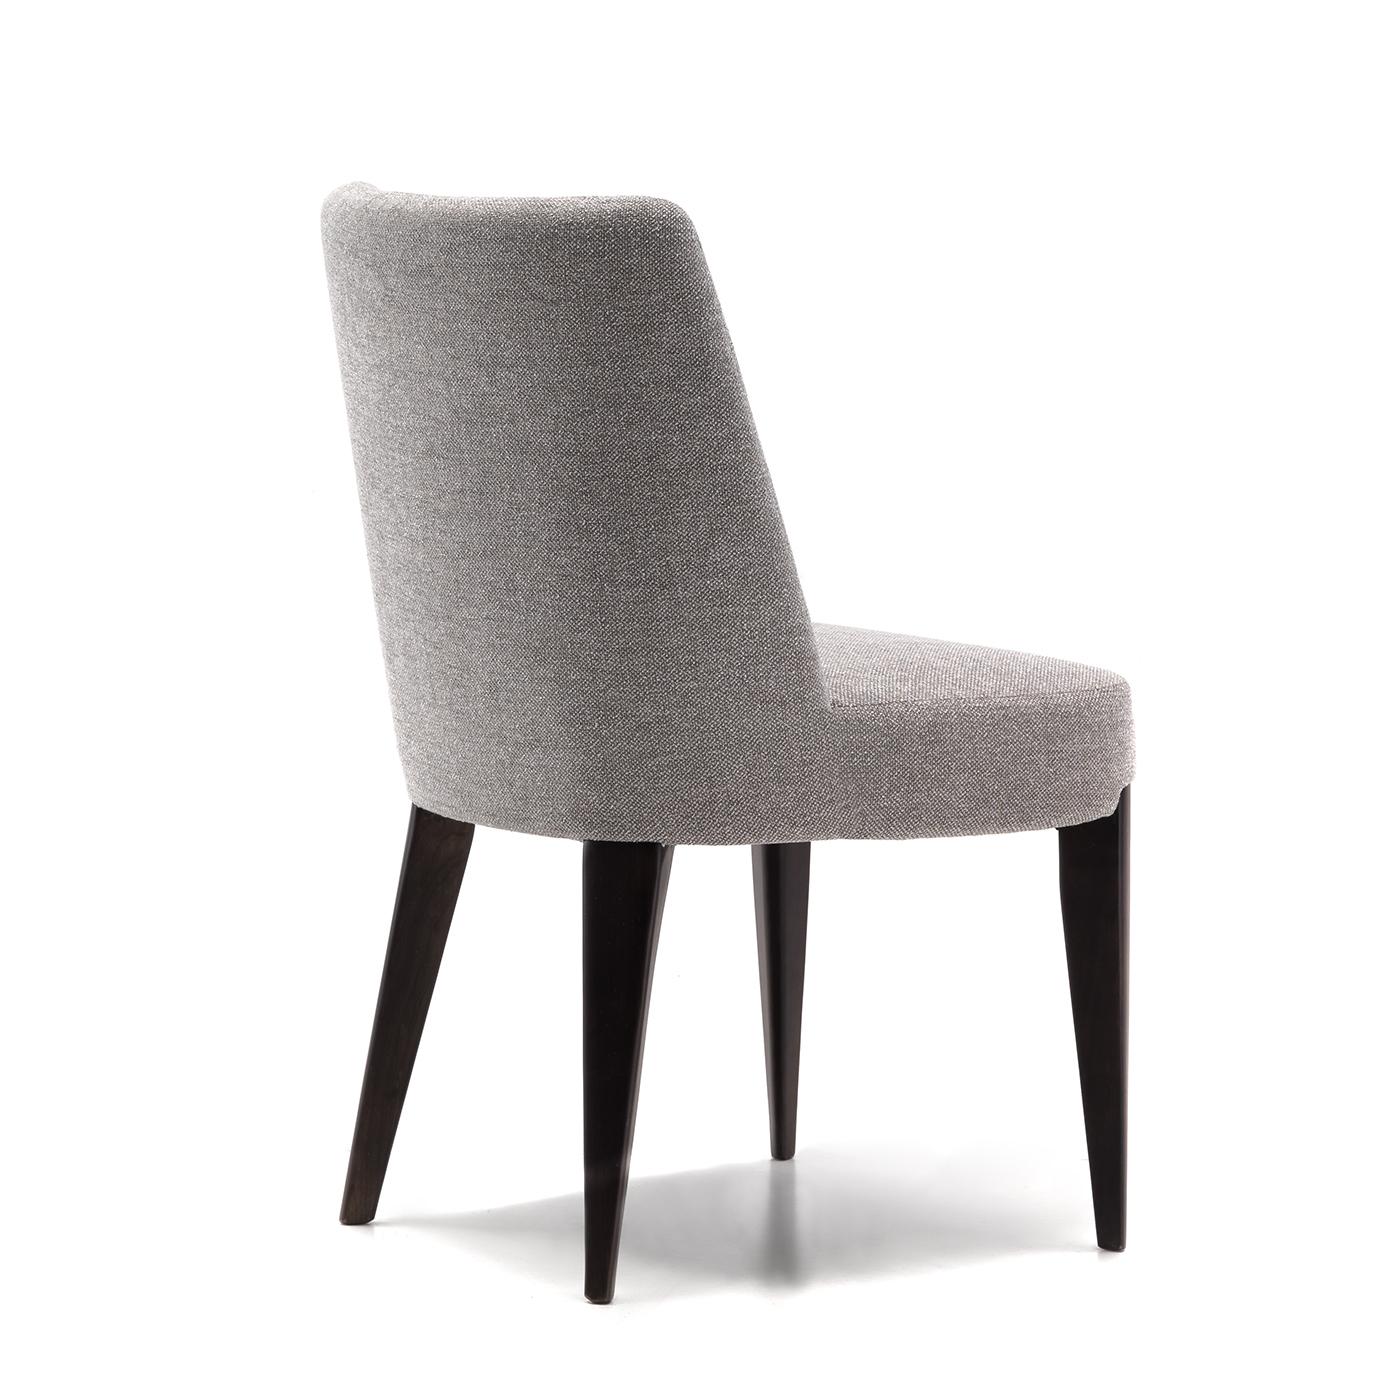 Ein vielseitiger, klarer Look definiert diesen exquisiten Stuhl von Giovanna Azzarello, dessen robuste Struktur aus massiver Kirsche mit einer verführerischen, satinierten Ebenholzoberfläche versehen ist. Die ideale Wahl, um moderne Tische mit